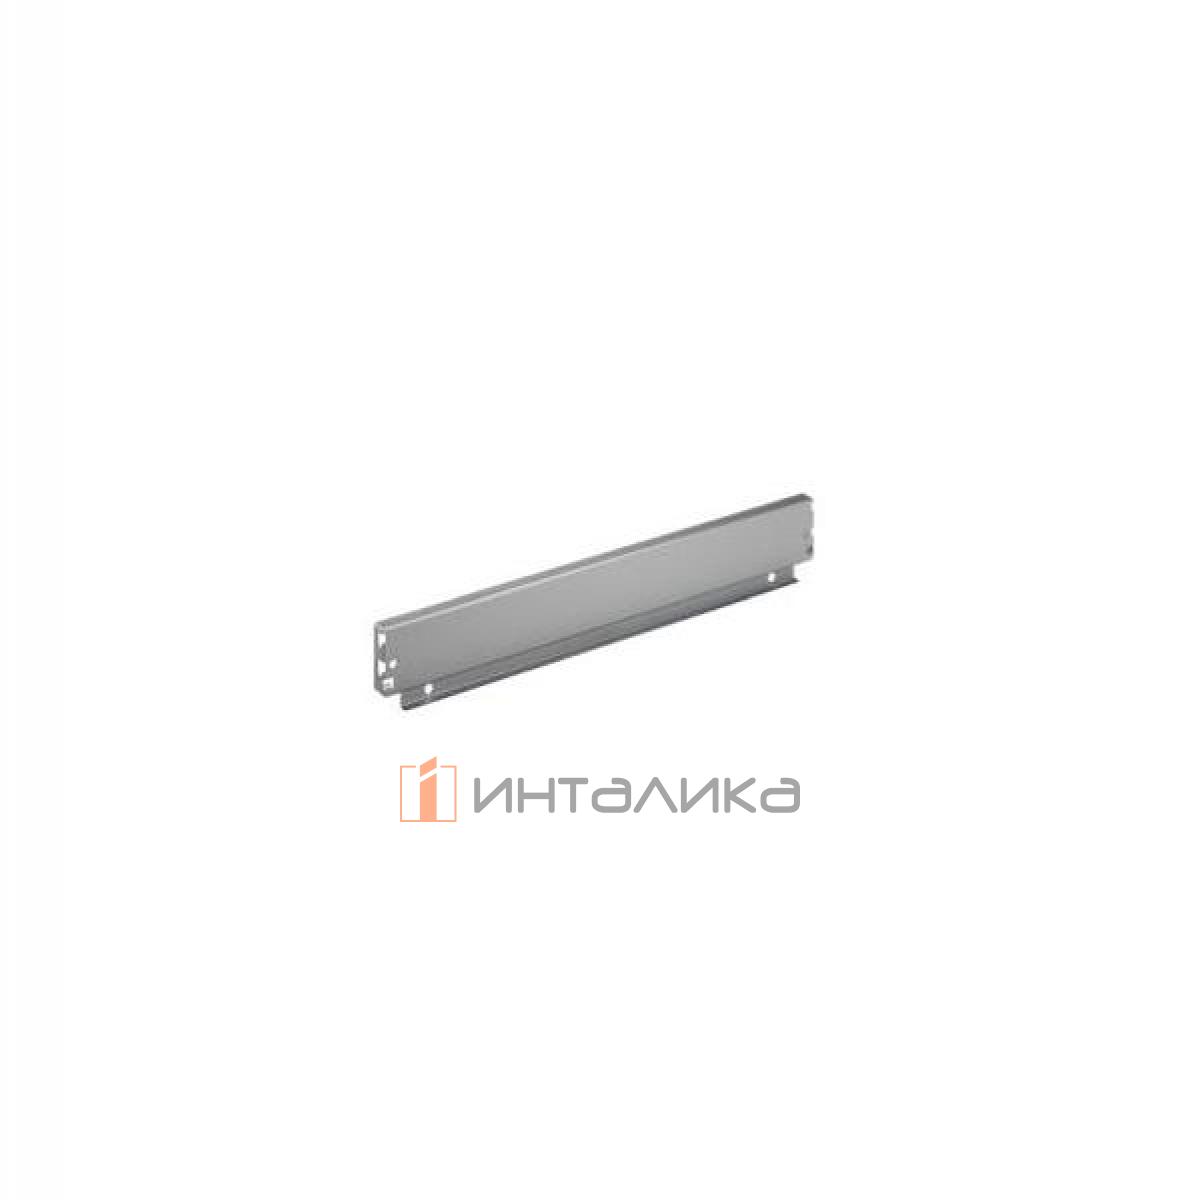 Задняя стенка HETTICH InnoTech/InnoTech Atira, высота 70мм, H800 мм, сталь, цвет серебристый, (V20)